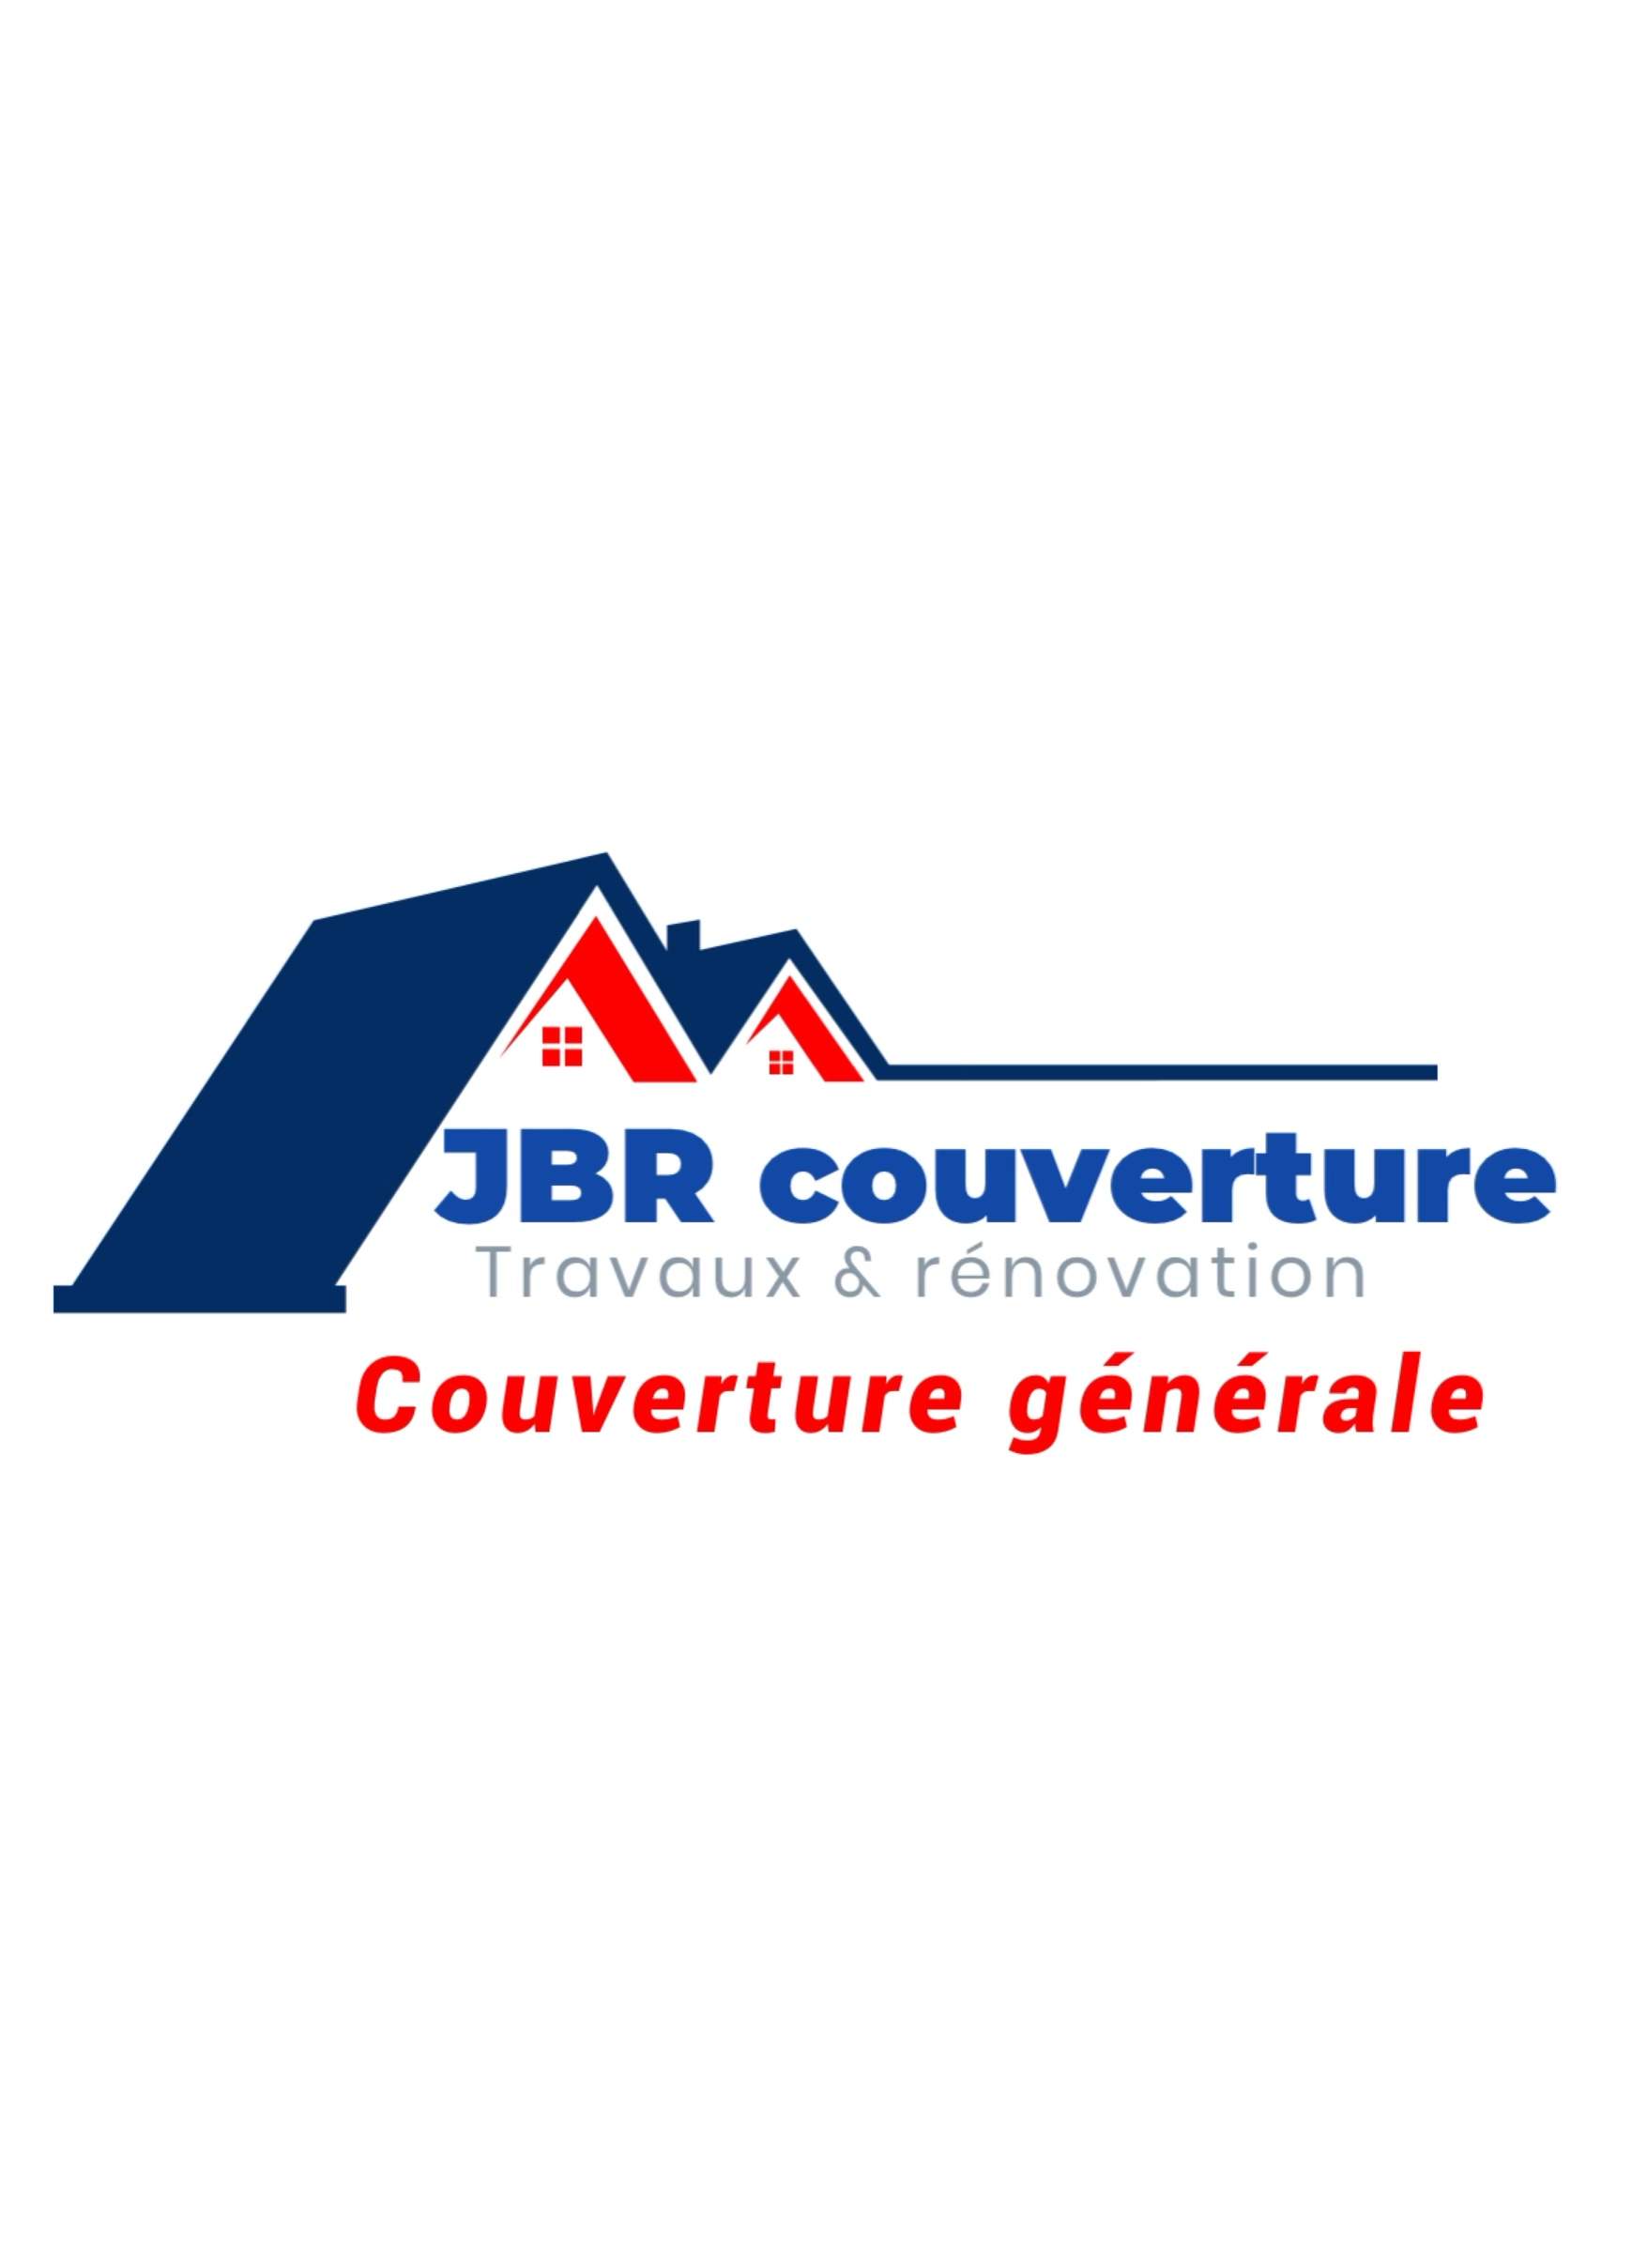 Logo Jbr couverture couverture de toit et revêtement étanche Seine-Saint-Denis 93